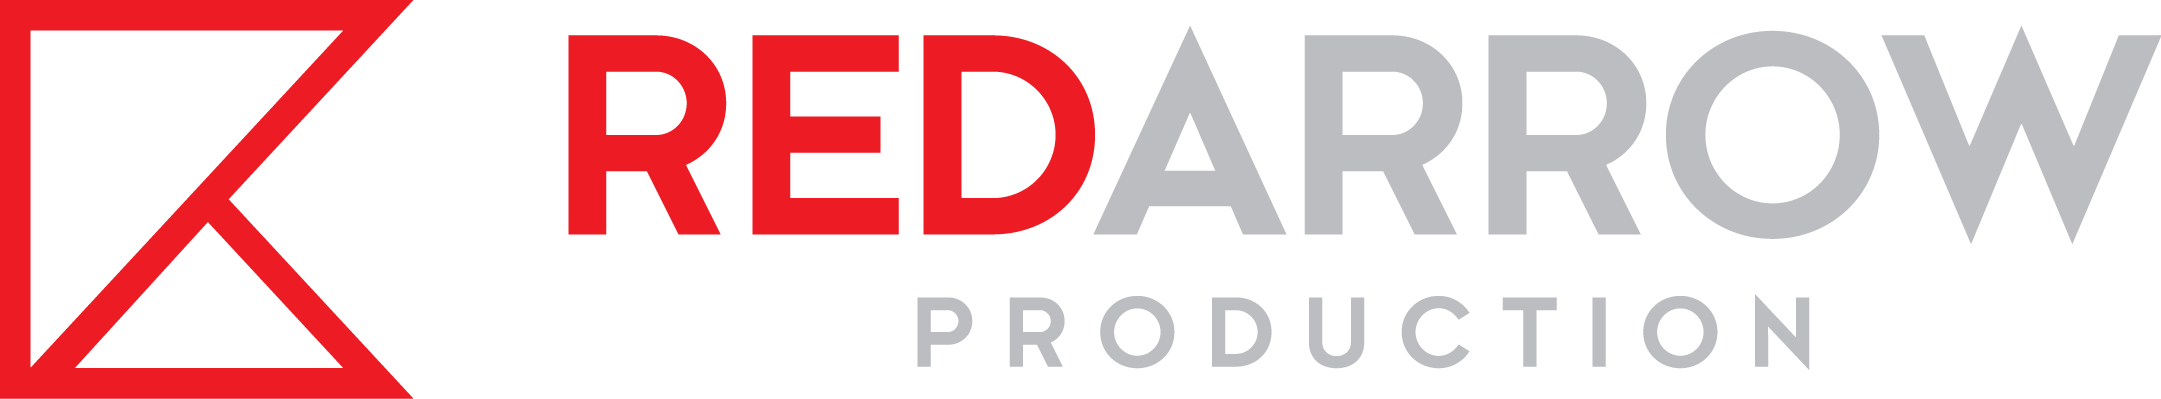 Red Arrow Production - Red Arrow Production (2161x399)